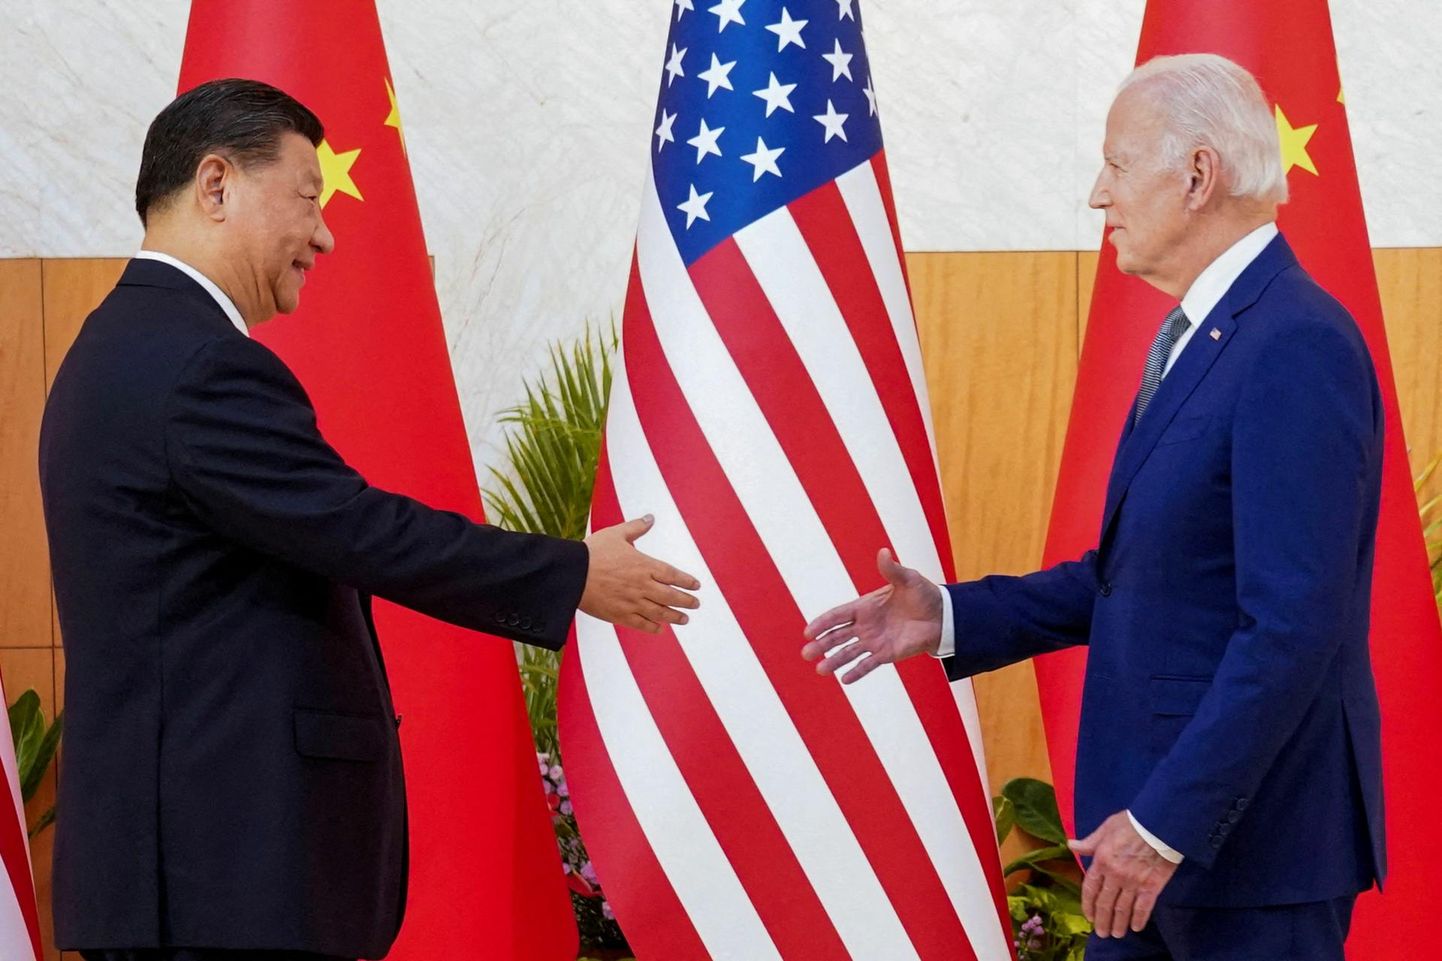 Hiina Rahvavabariigi president Xi Jinping ja Ameerika Ühendriikide president Joe Biden mullu 14. novembril G20 liidrite kohtumisel Balil. 